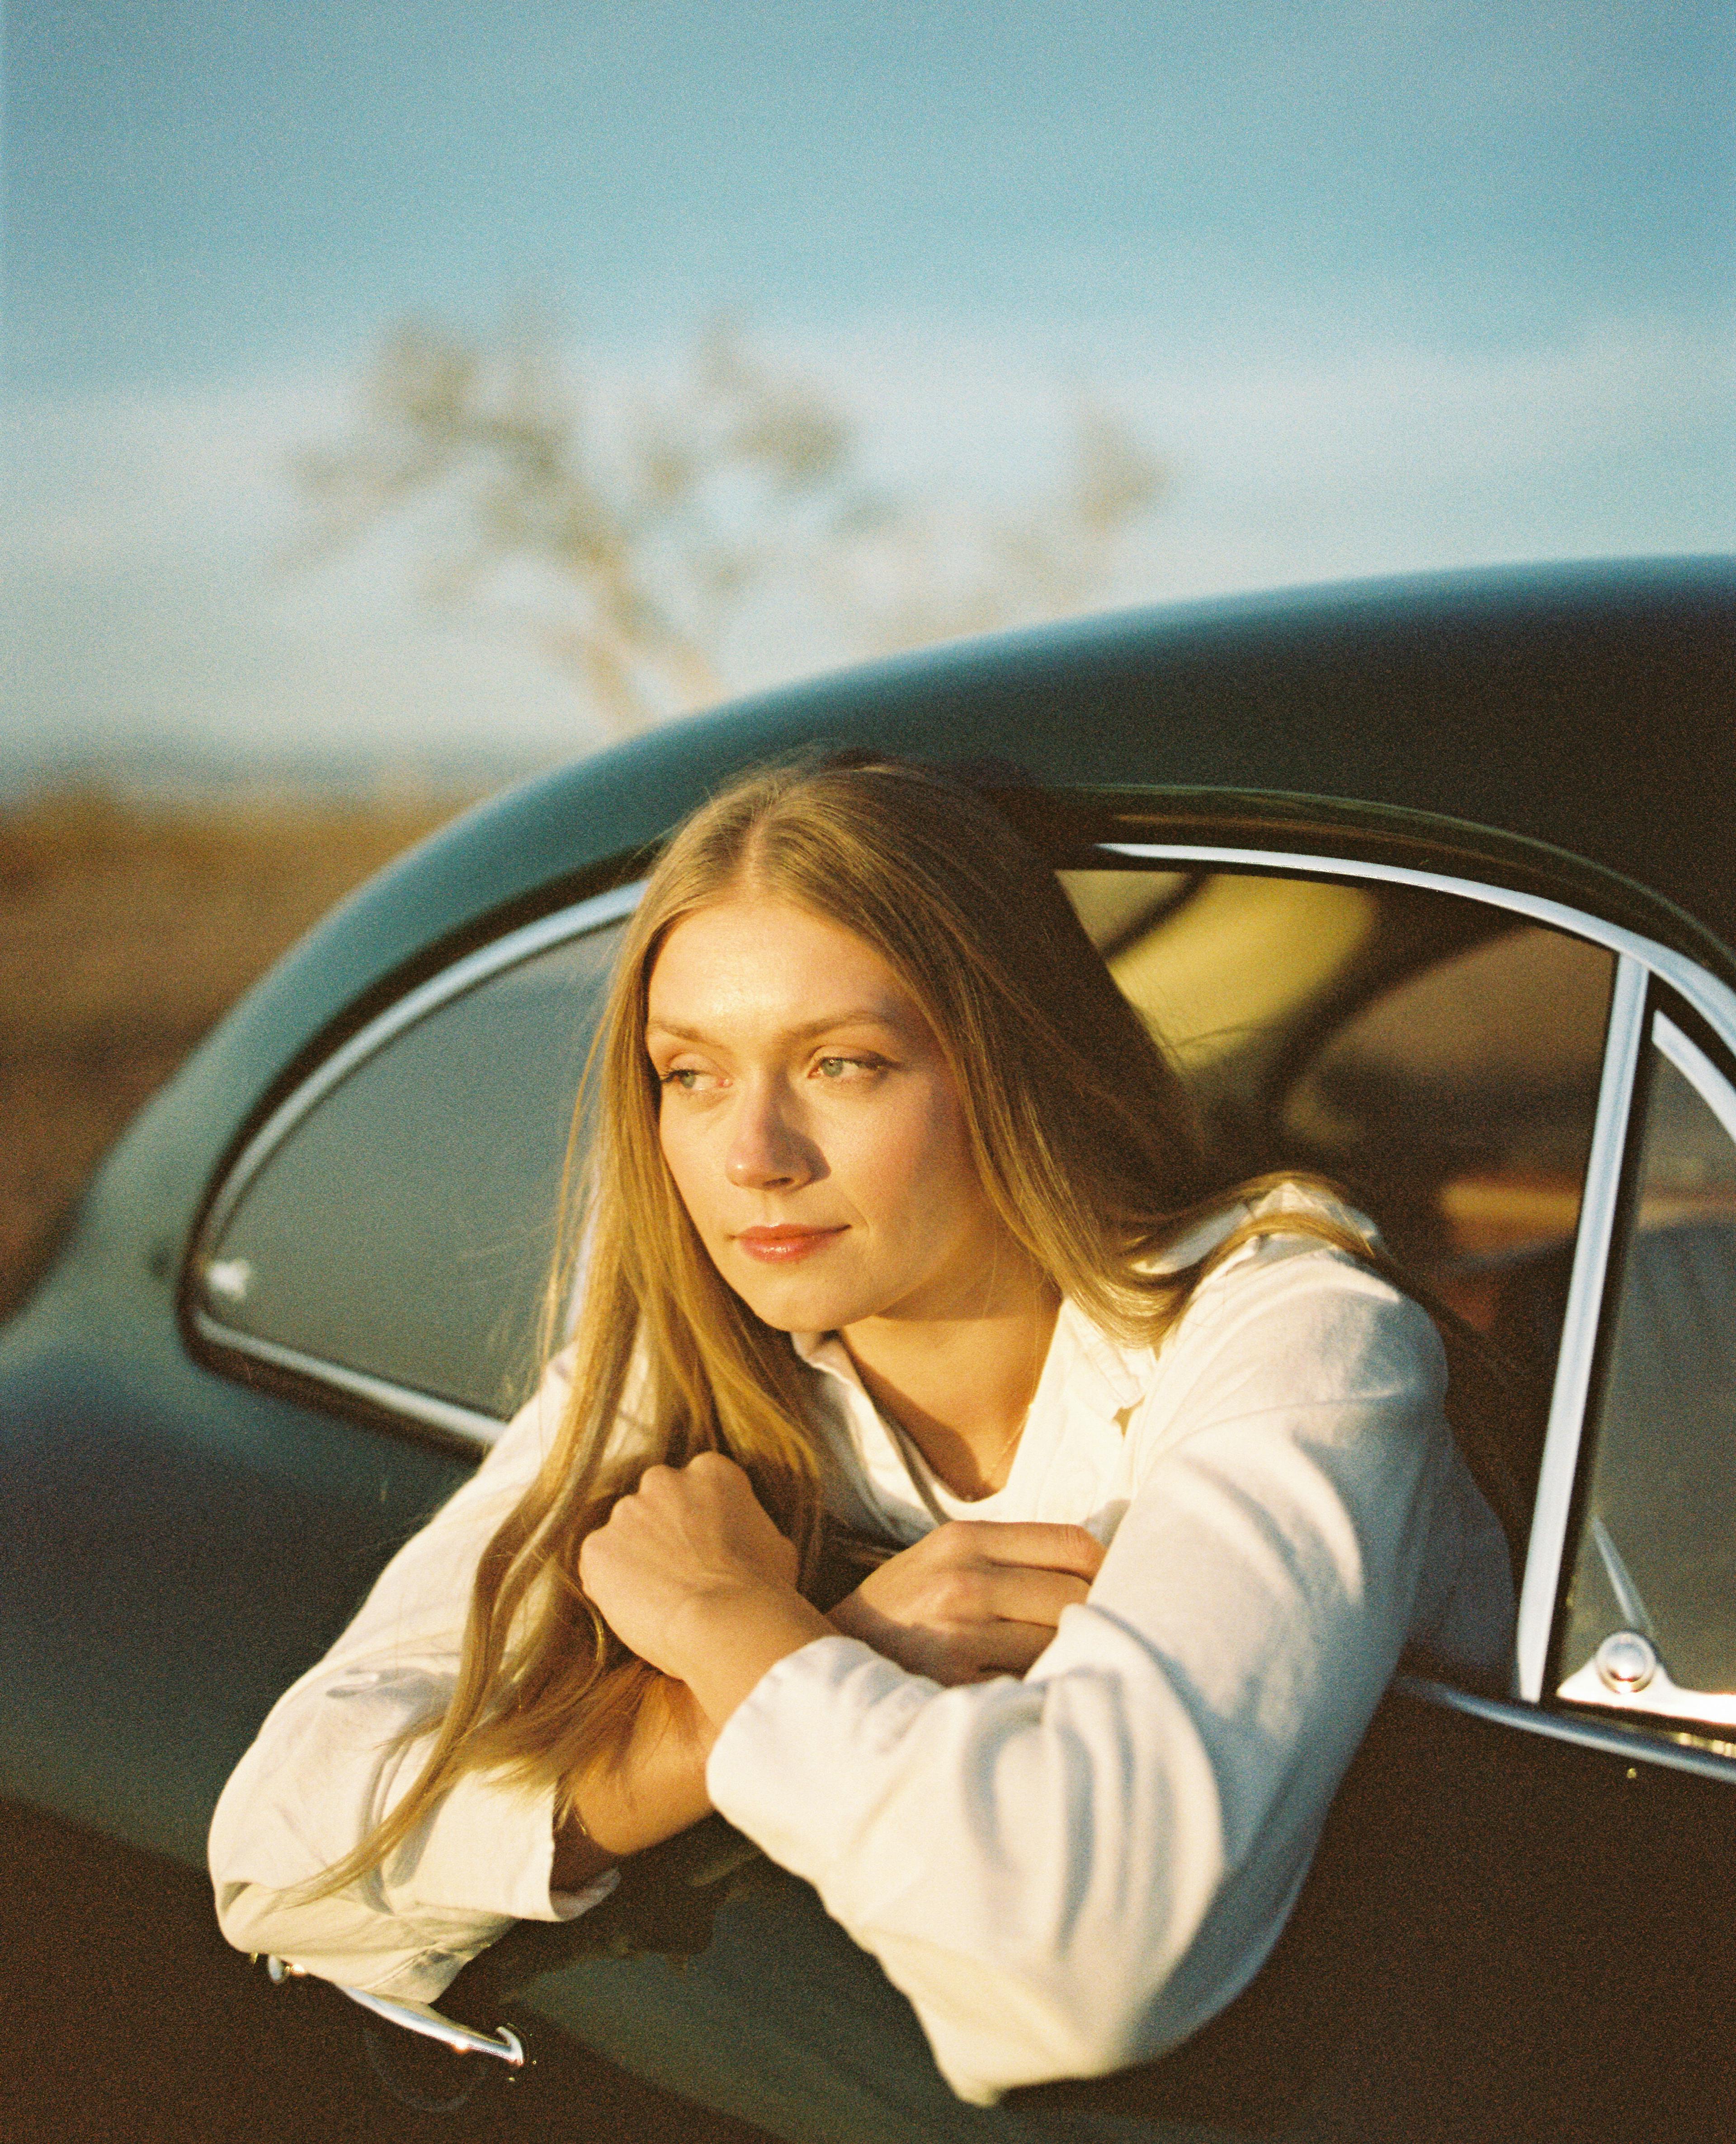 KJ in a vintage car at sunset shot by Natalie Carrasco.